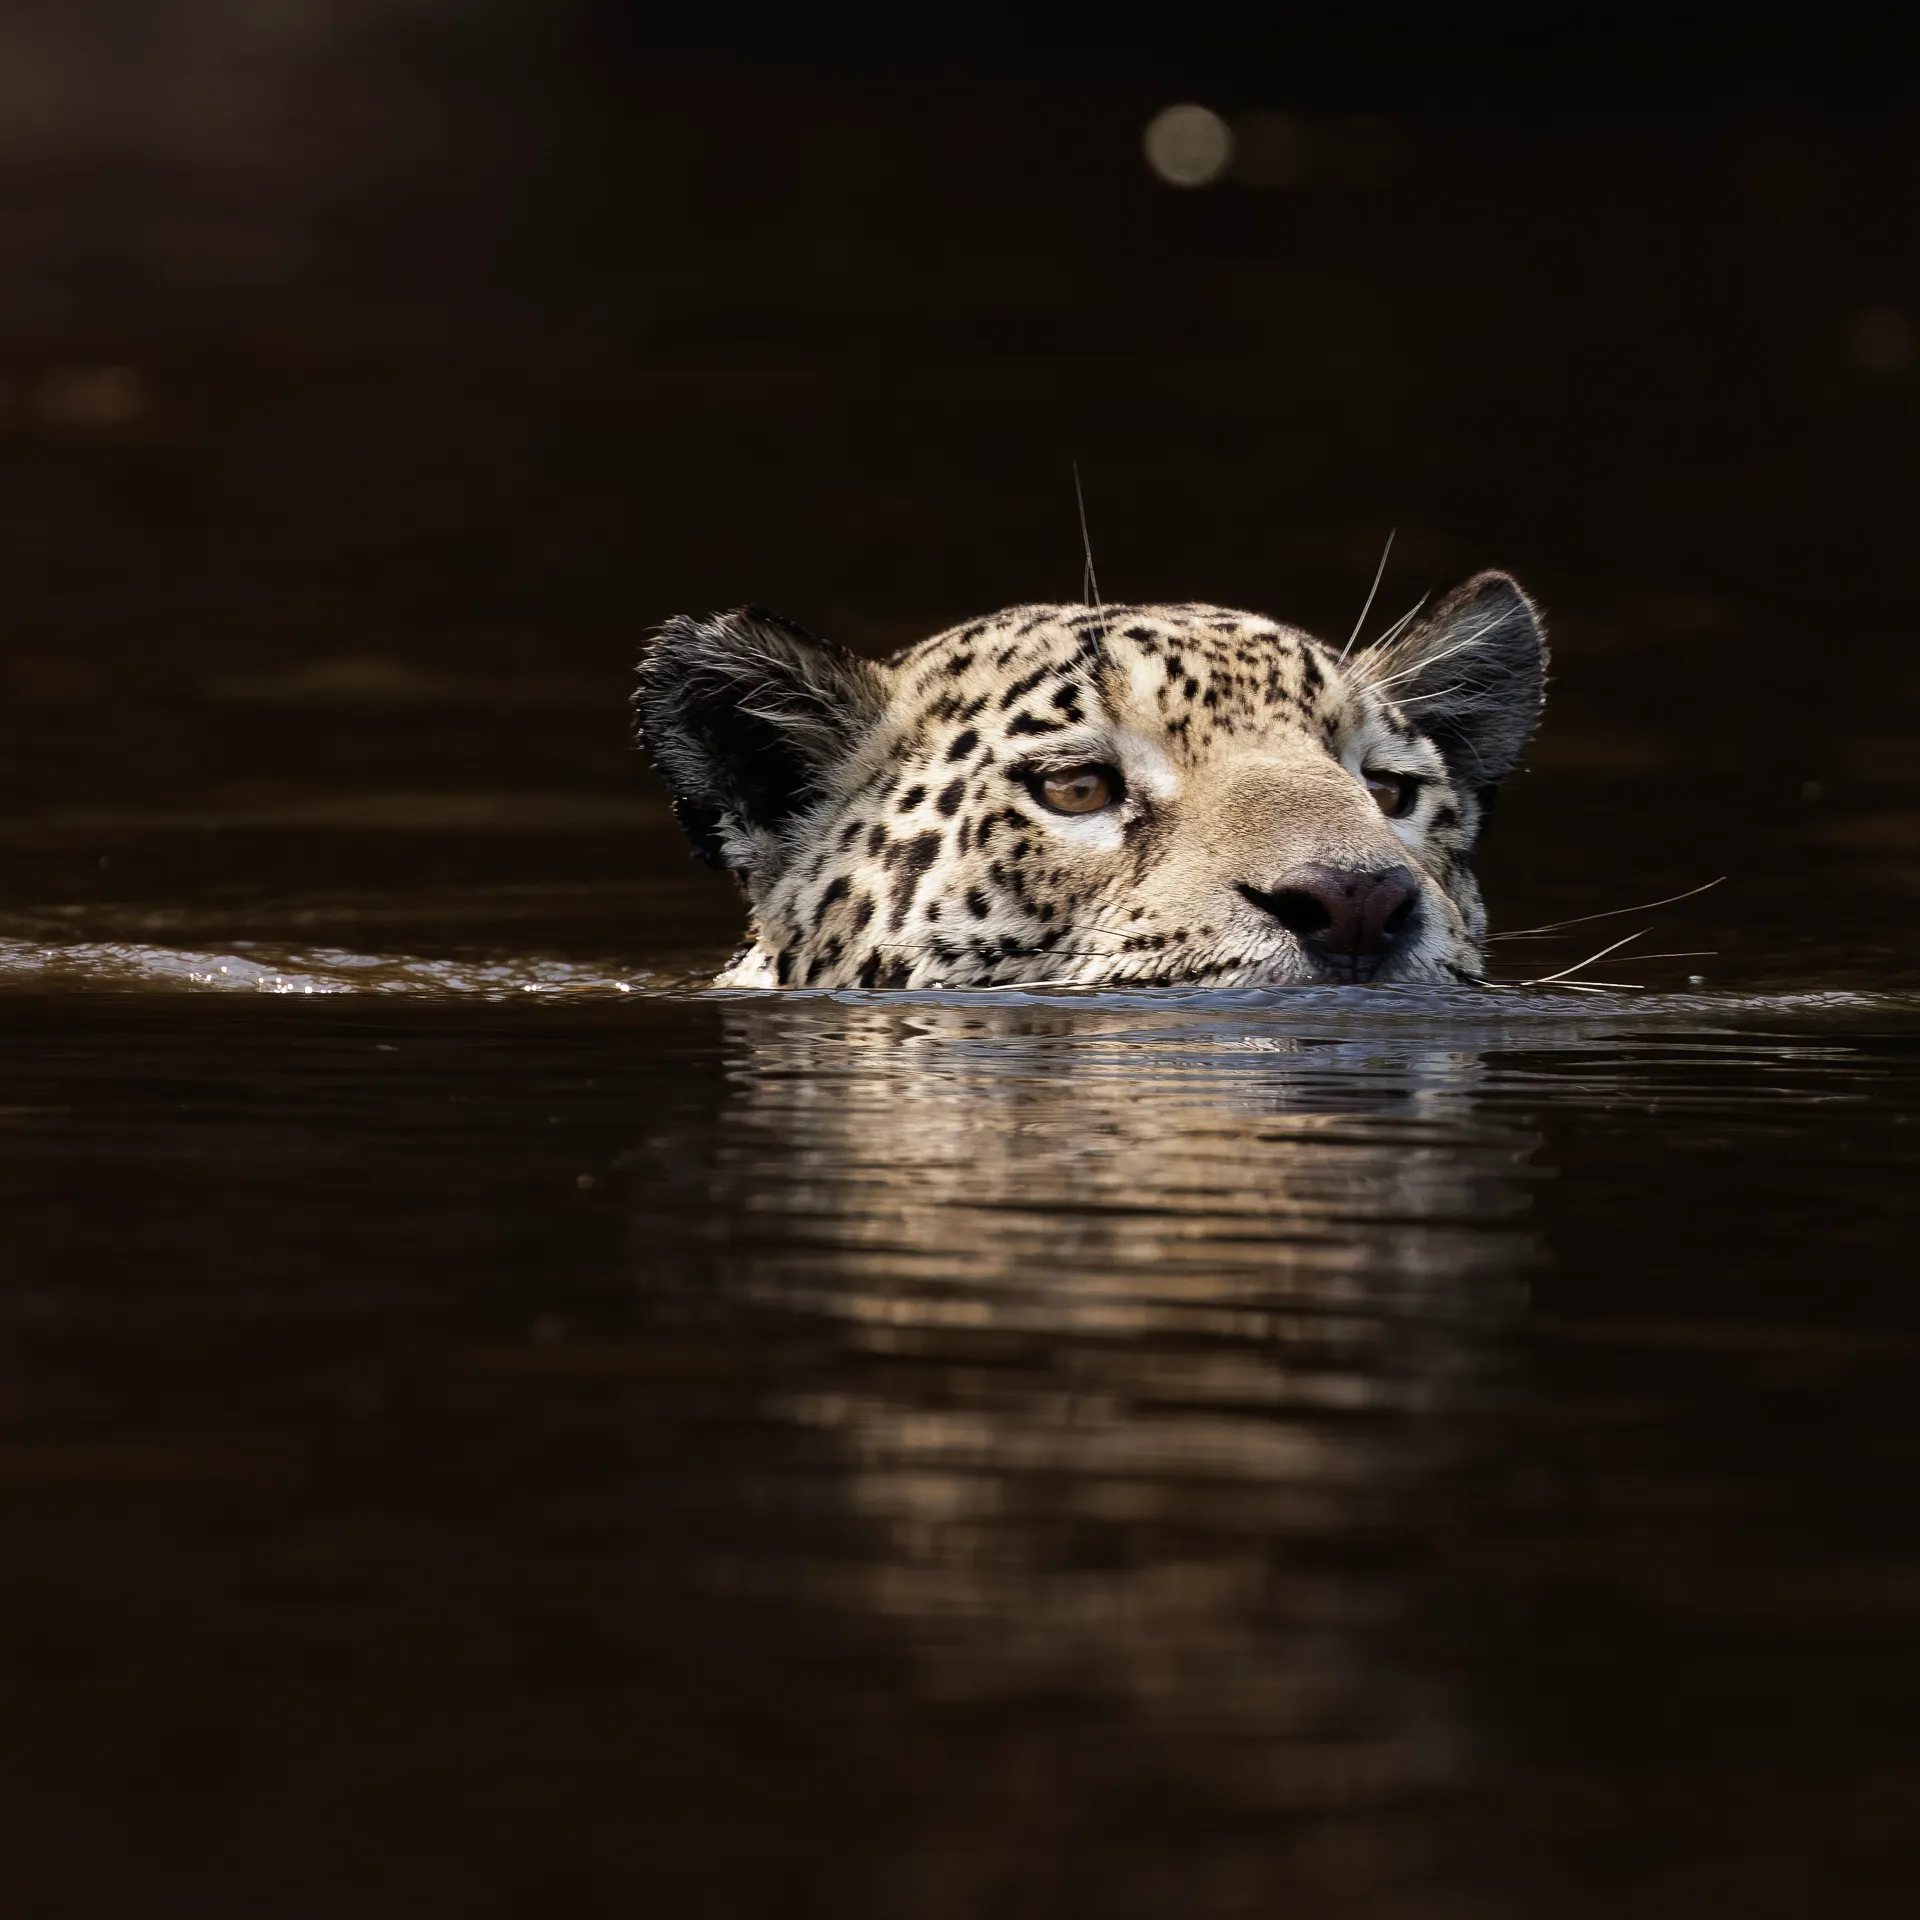 Jaguar swimming in dark water | Pantanal | Brazil